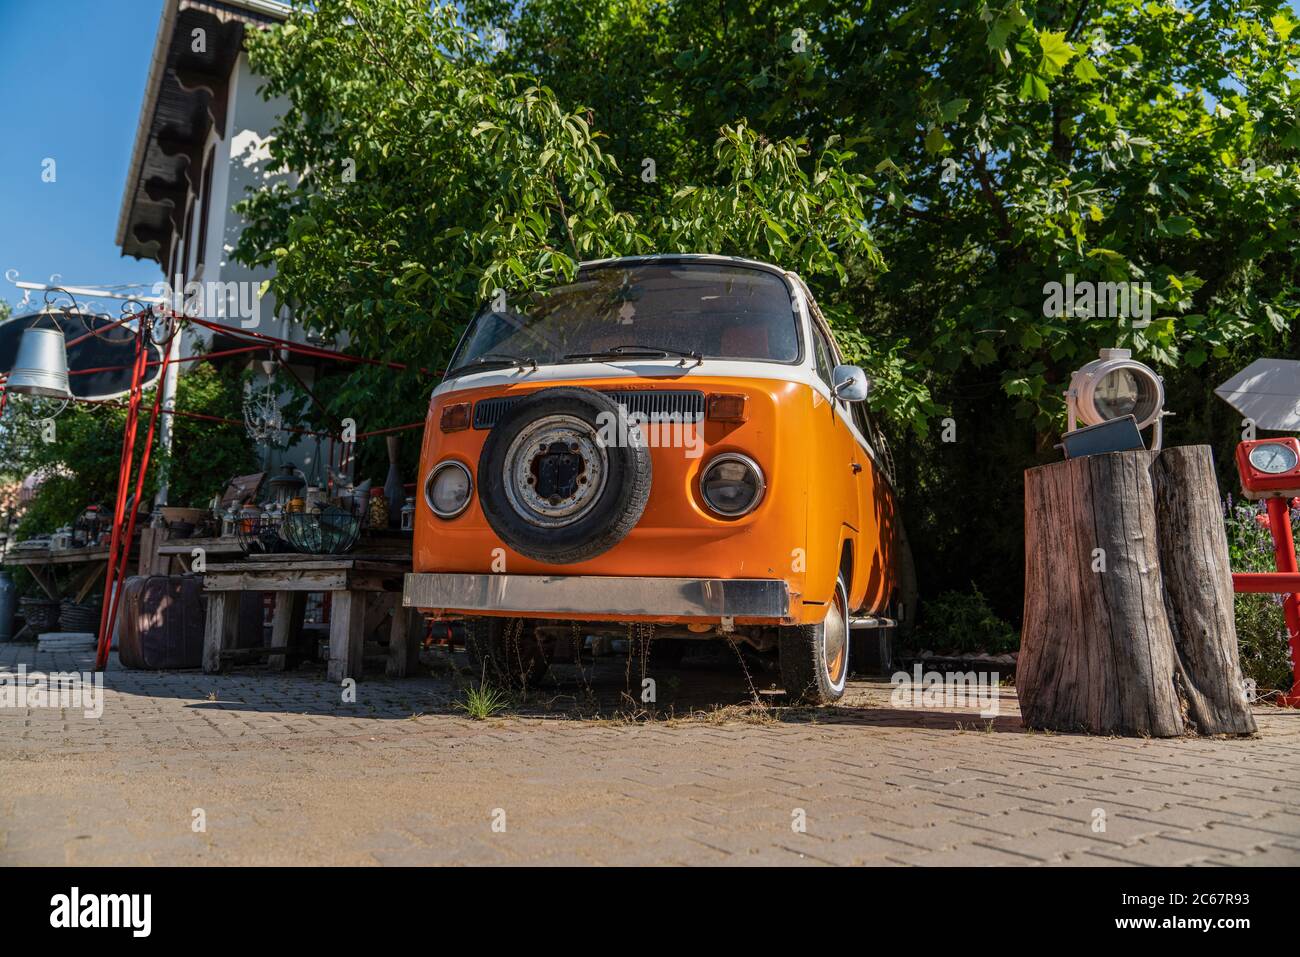 Ankara/Turkey- July 05 2020: Old orange Volkswagen van parked in the garden Stock Photo